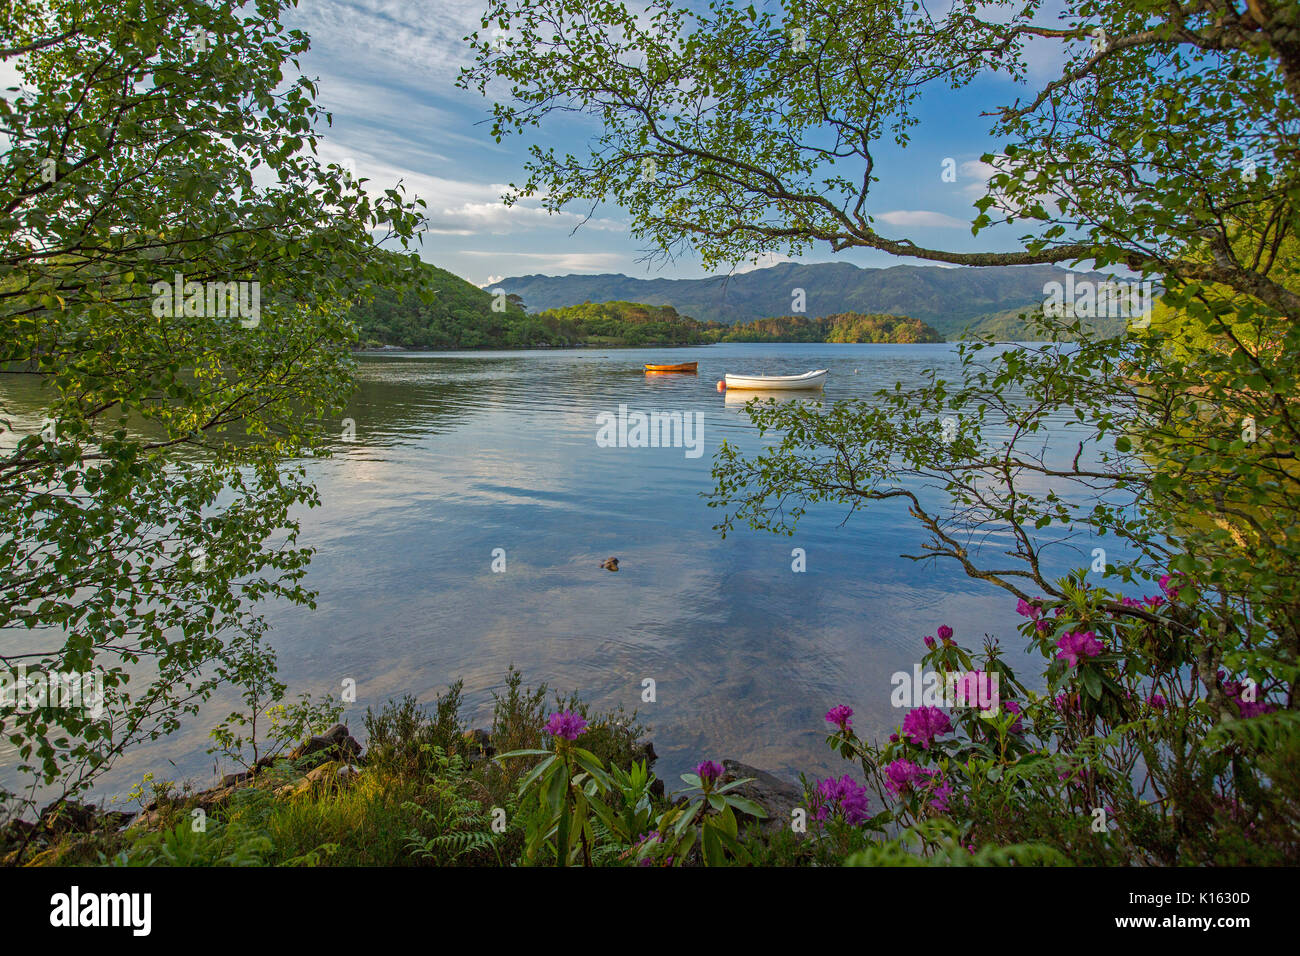 Atemberaubende Landschaft mit Loch Morar mit zerklüfteten Bergen und mit Booten auf die ruhige, blaue Wasser unter blauem Himmel in Schottland gesäumt Stockfoto